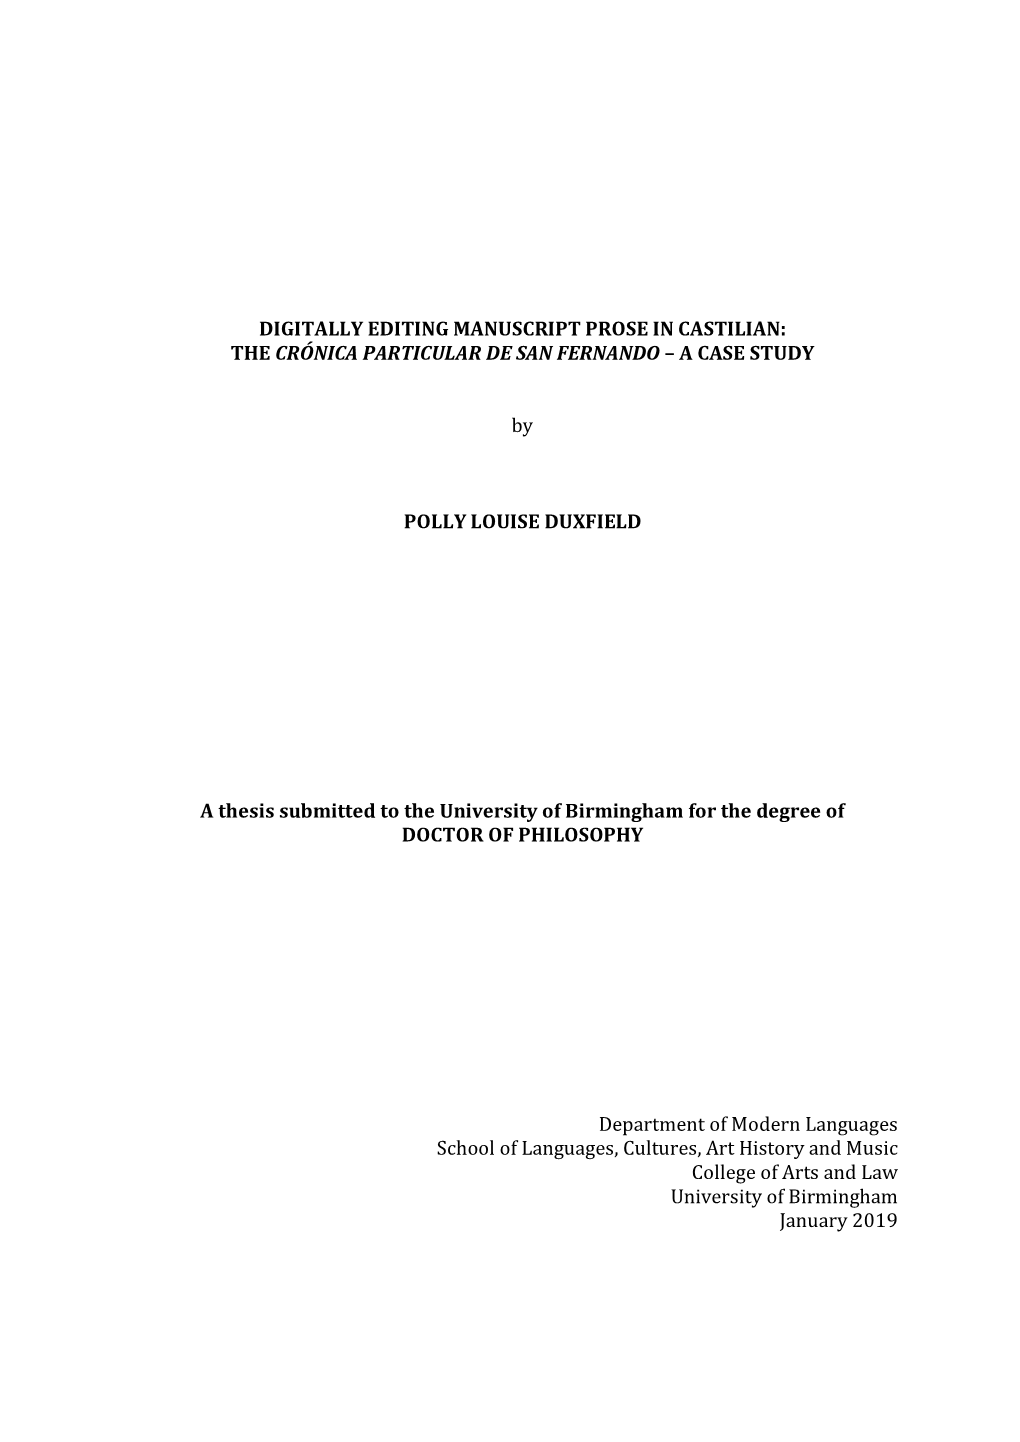 The Crónica Particular De San Fernando – a Case Study